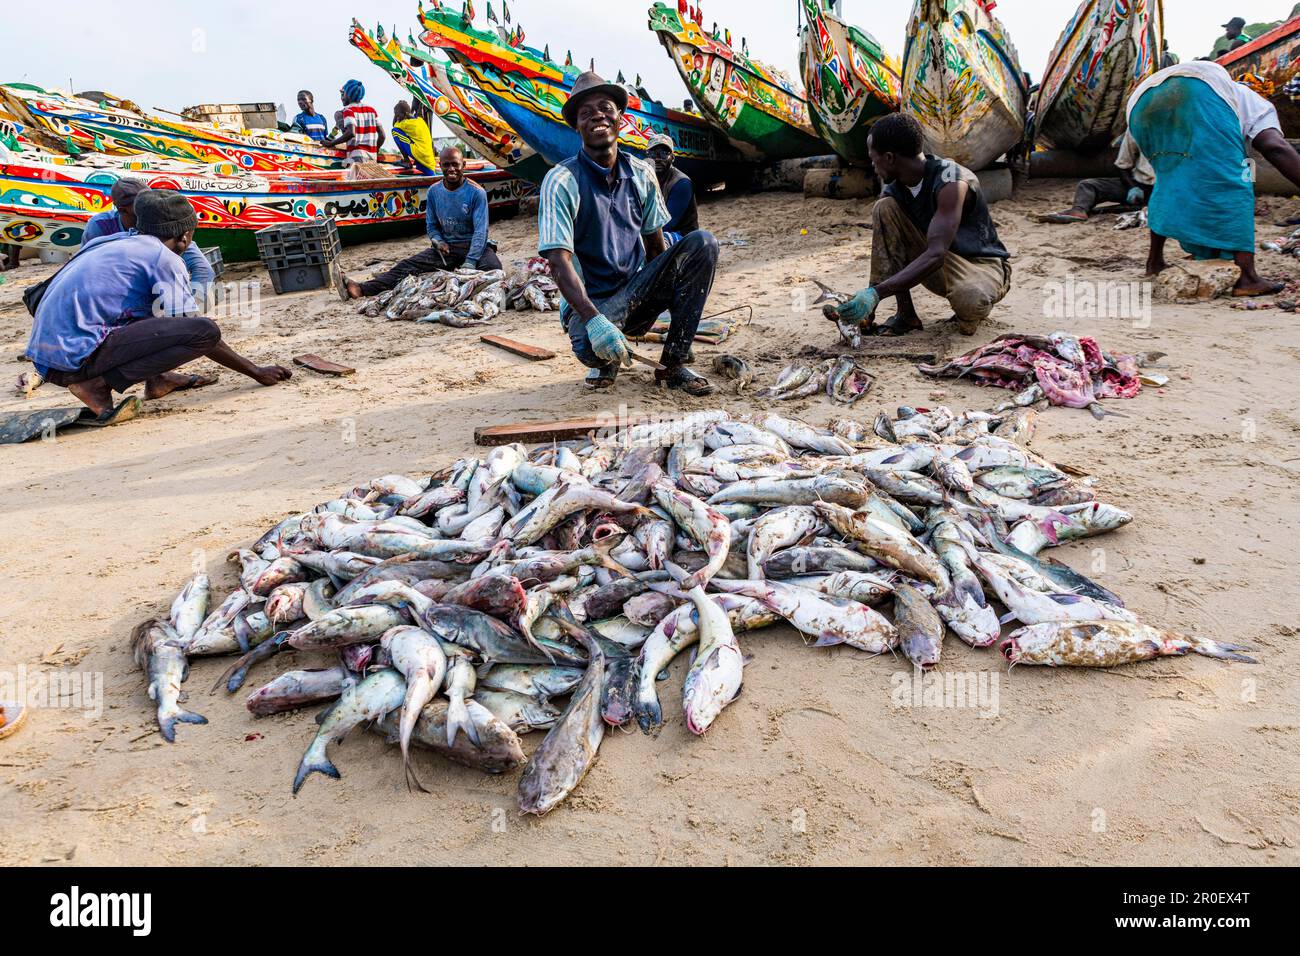 Pêcheurs avant les bateaux de pêche colorés, Cap Skirring, Casamance, Sénégal Banque D'Images